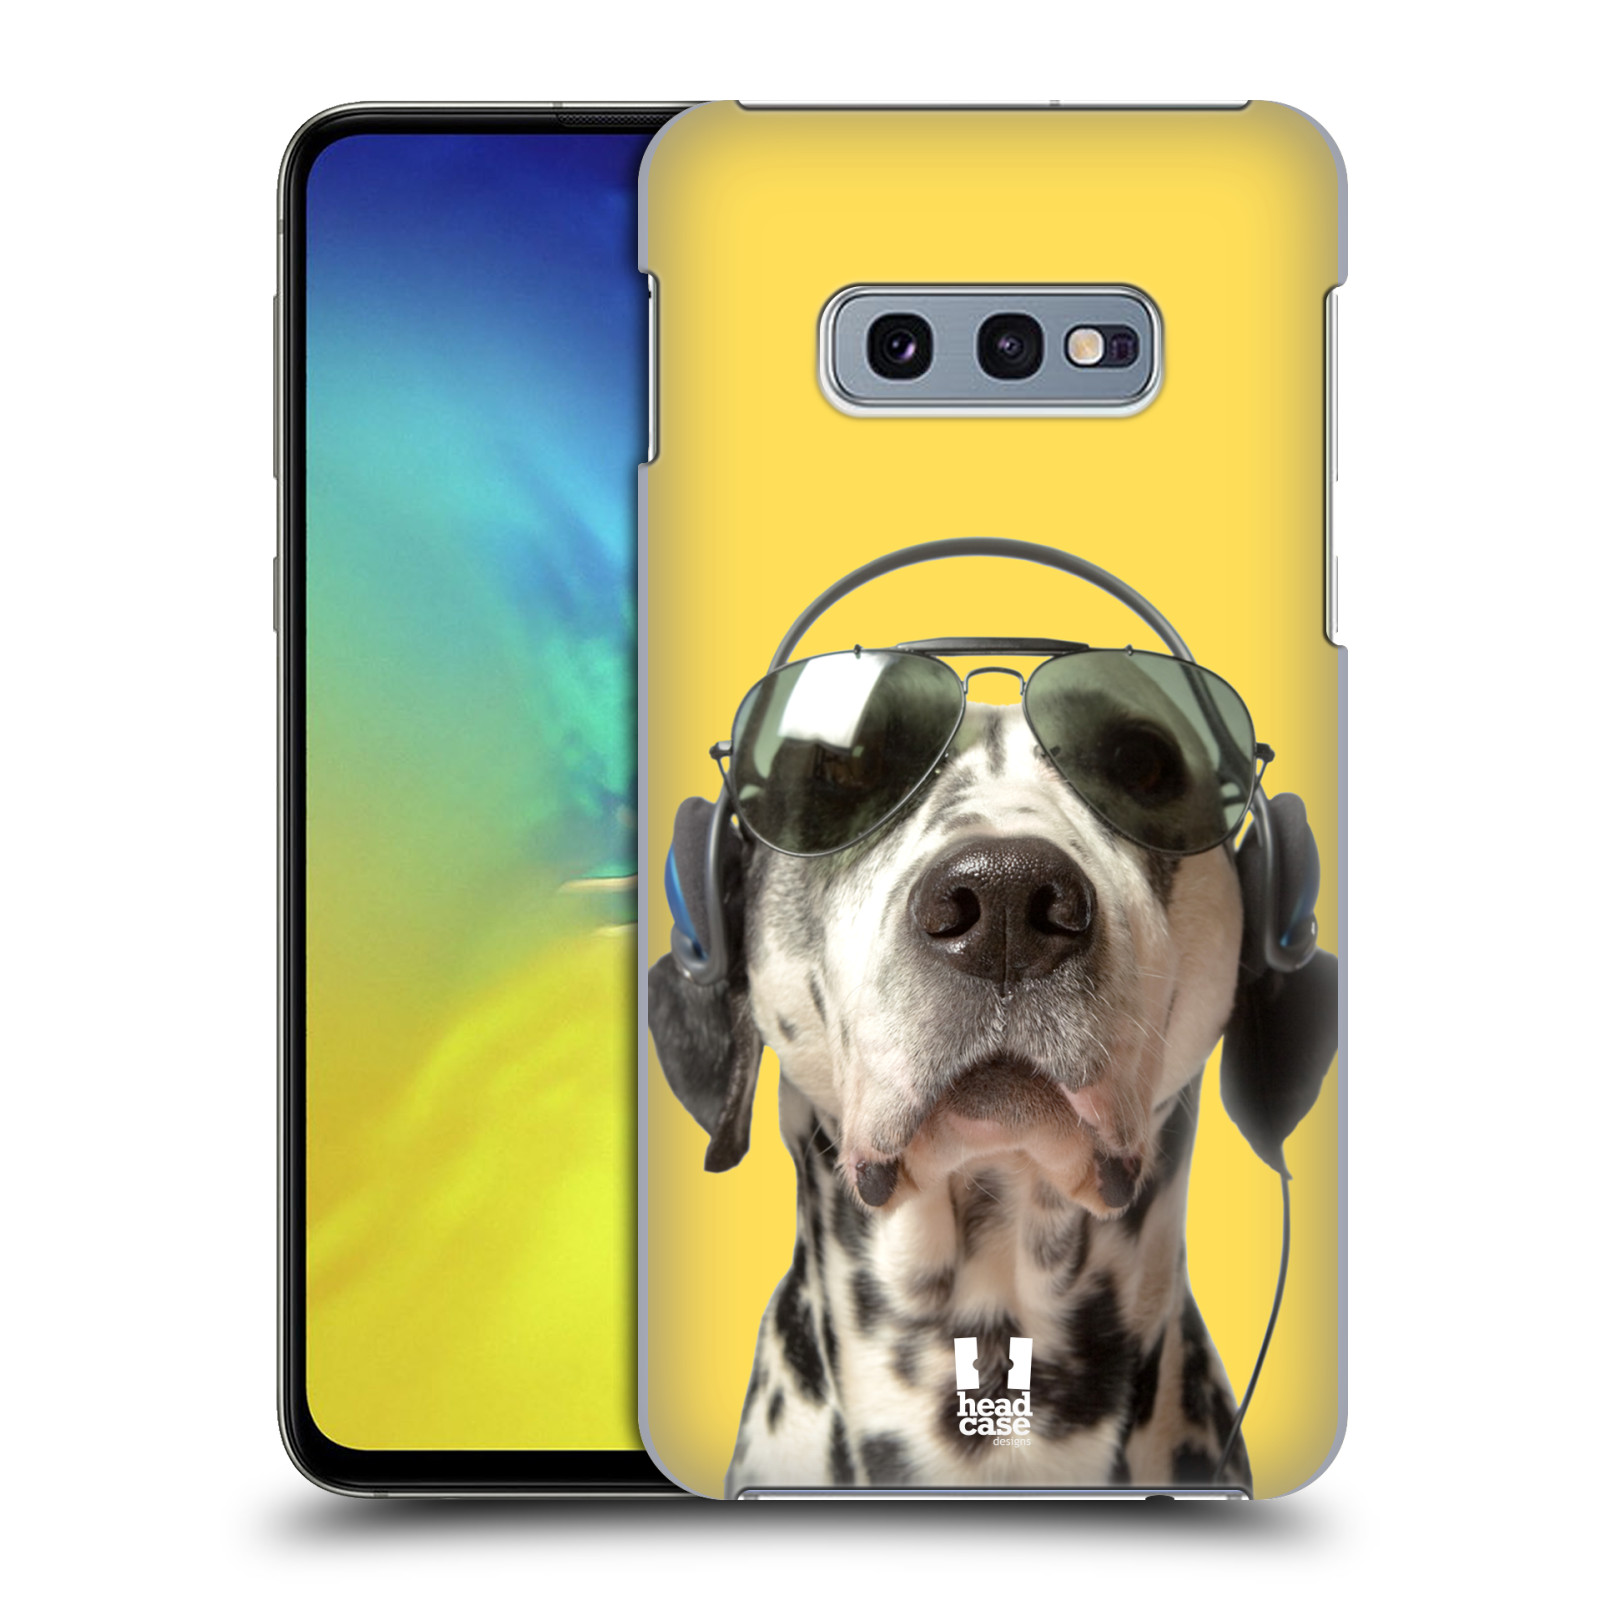 Pouzdro na mobil Samsung Galaxy S10e - HEAD CASE - vzor Legrační zvířátka dalmatin se sluchátky žlutá